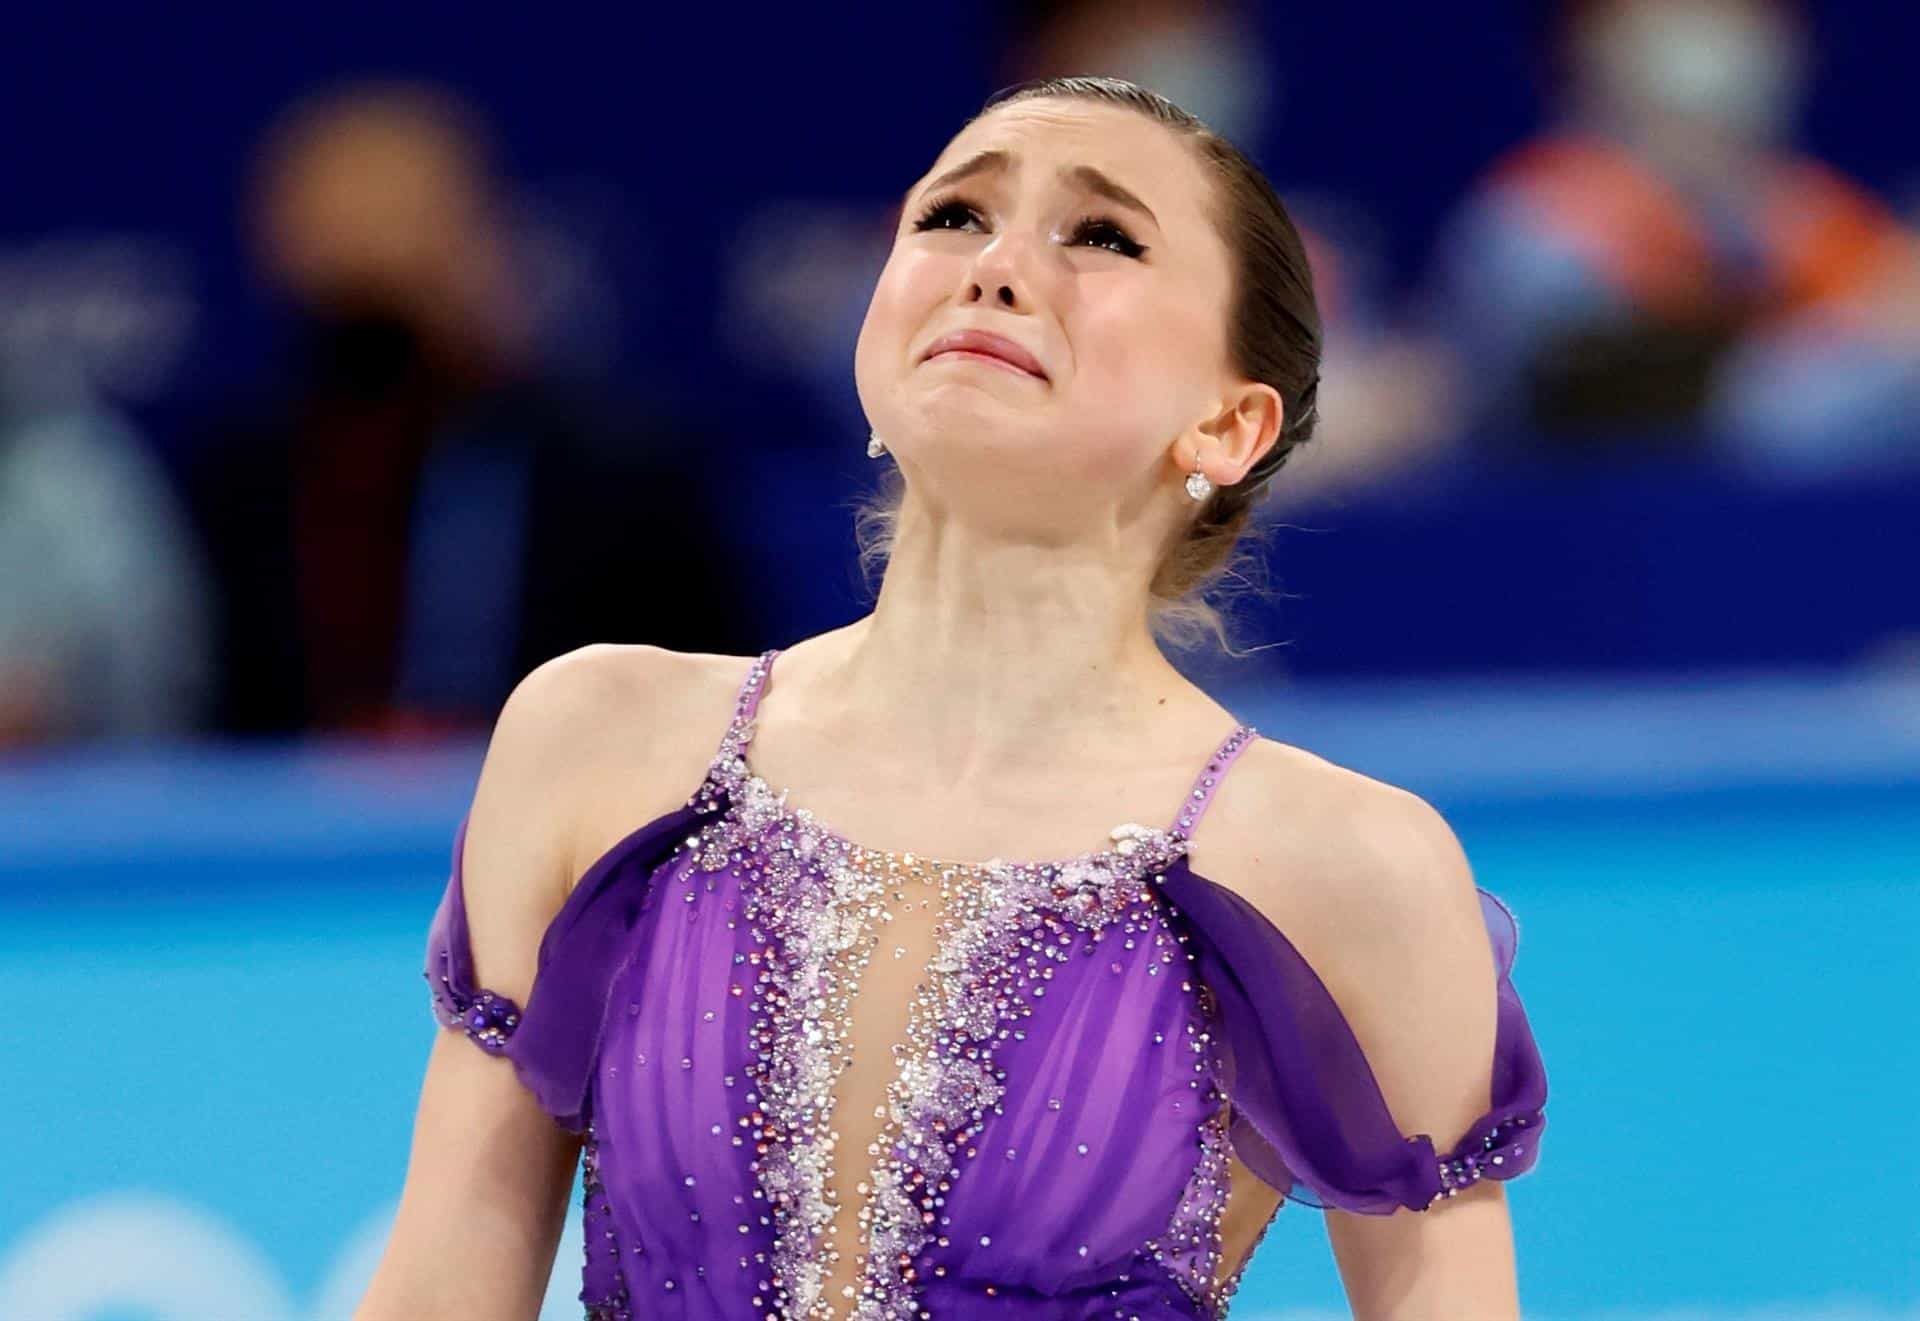 Kamila Valieva rompe a llorar tras su ejercicio en el programa libre de patinaje artístico de Pekín 2022.